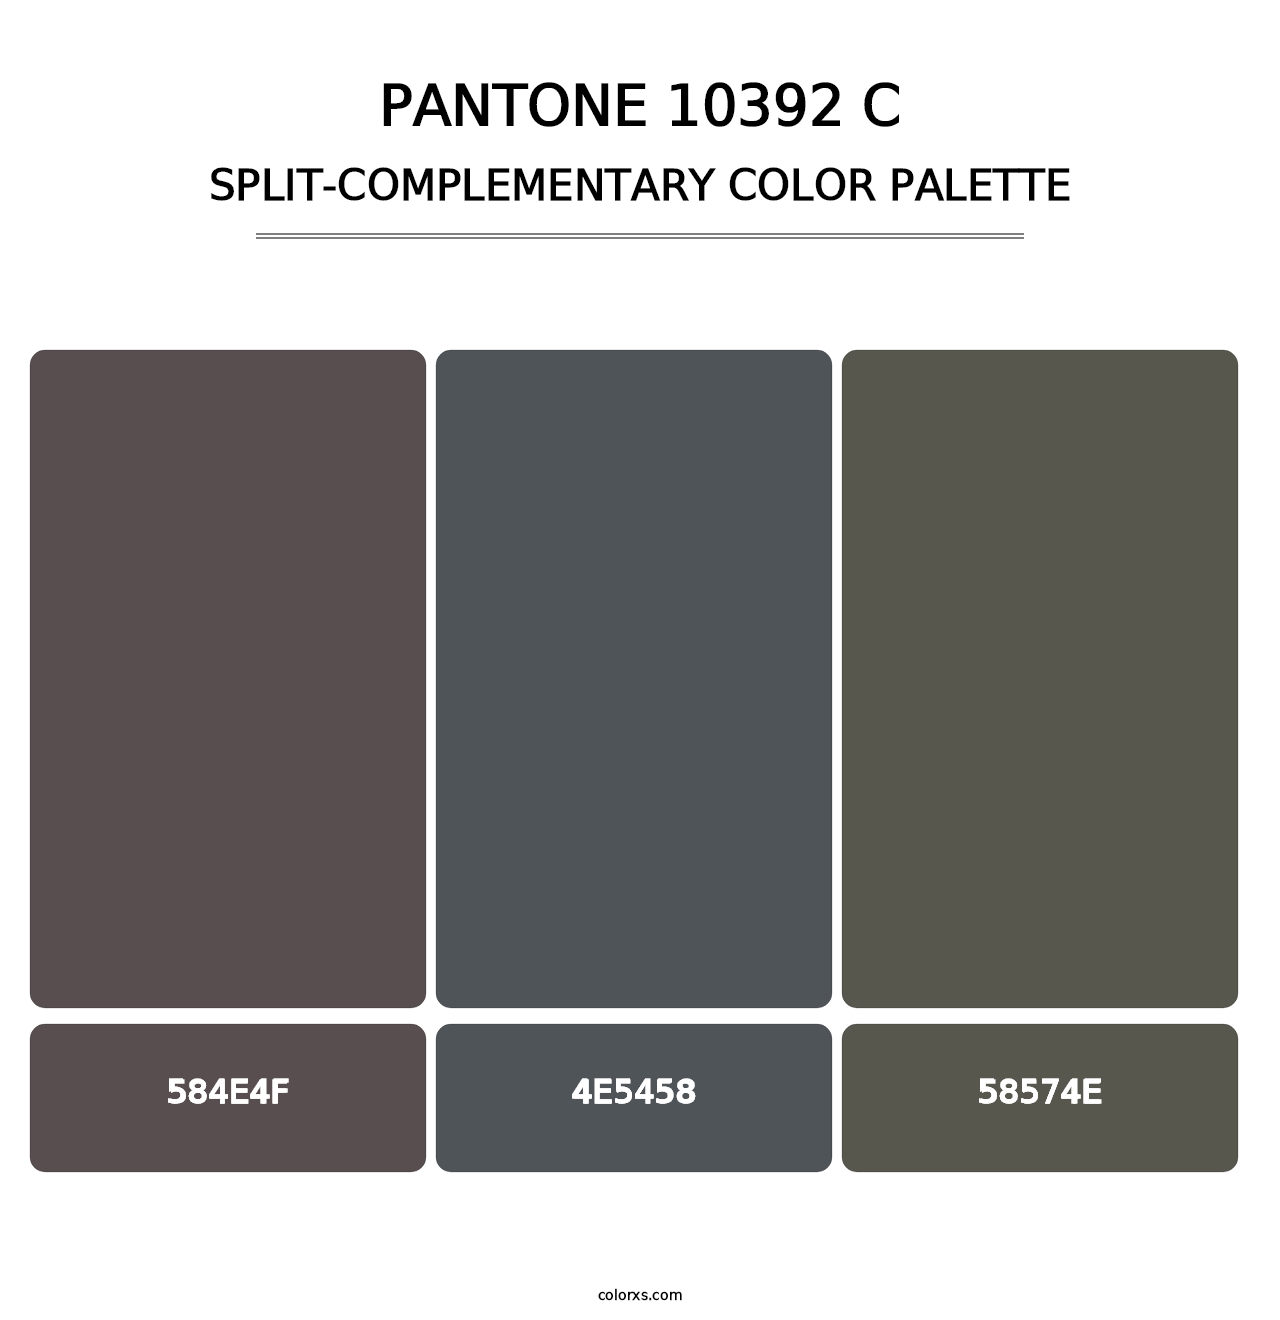 PANTONE 10392 C - Split-Complementary Color Palette